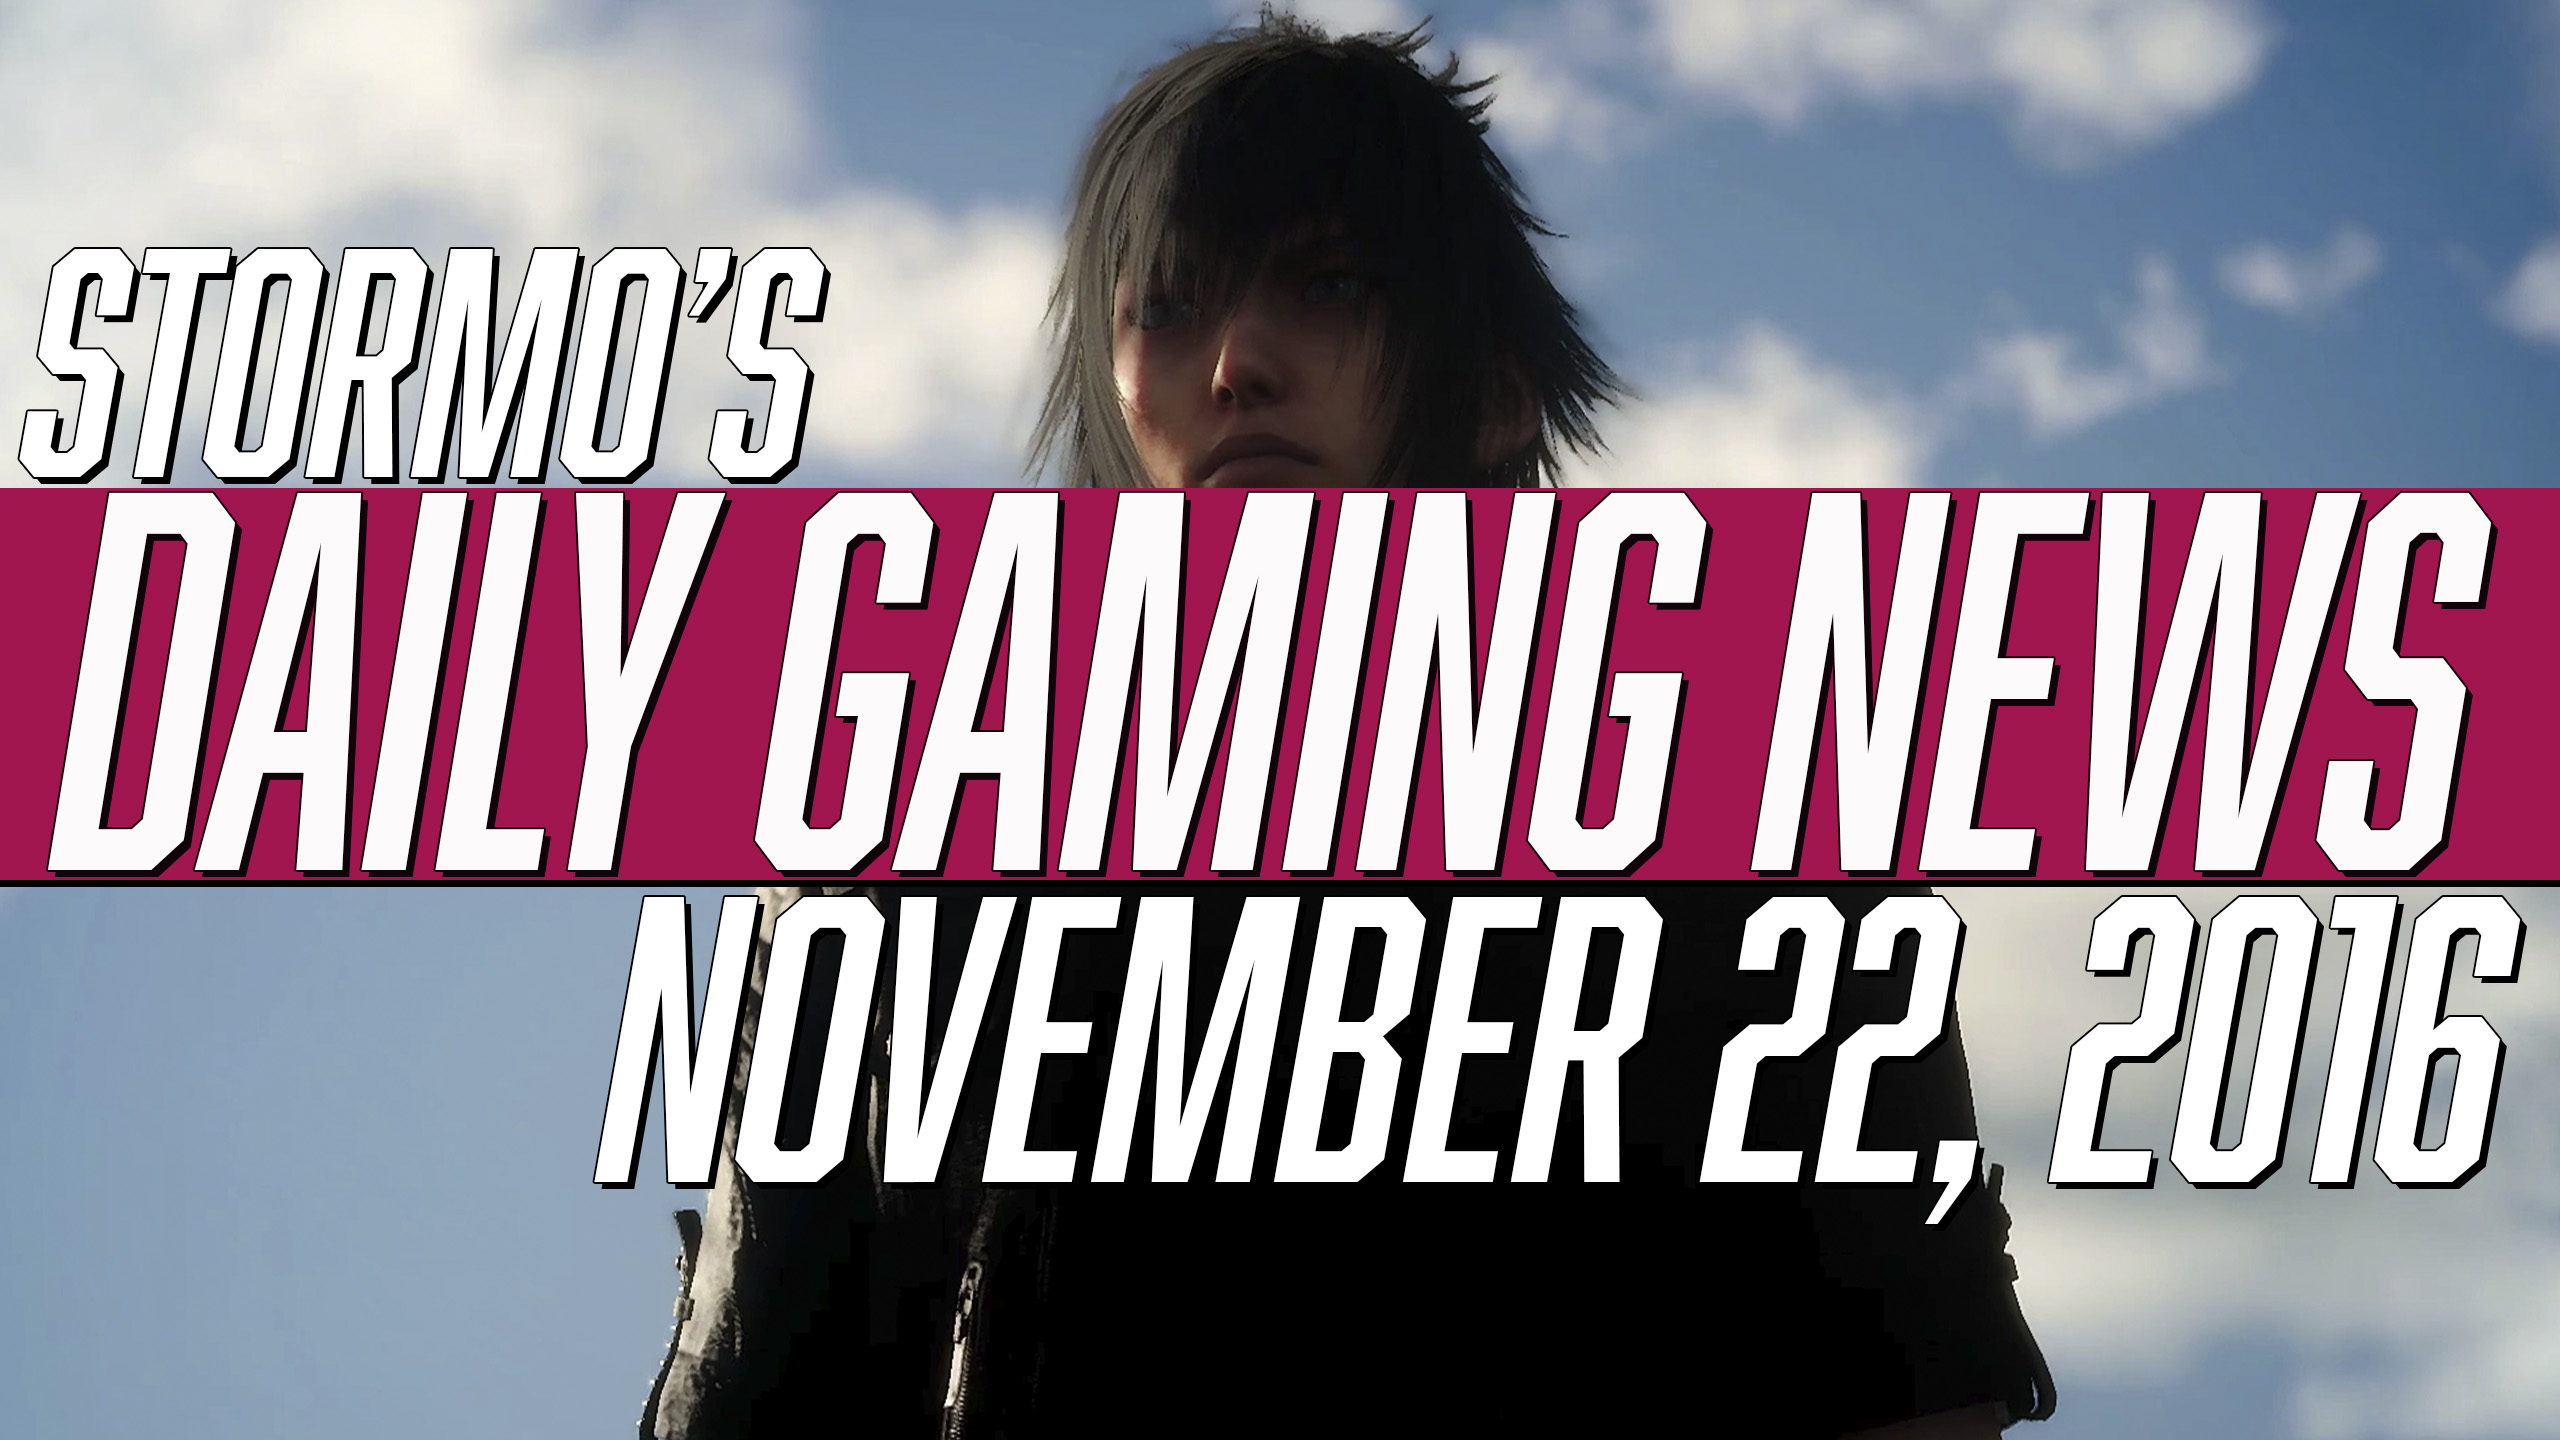 Daily Gaming News - November 22, 2016